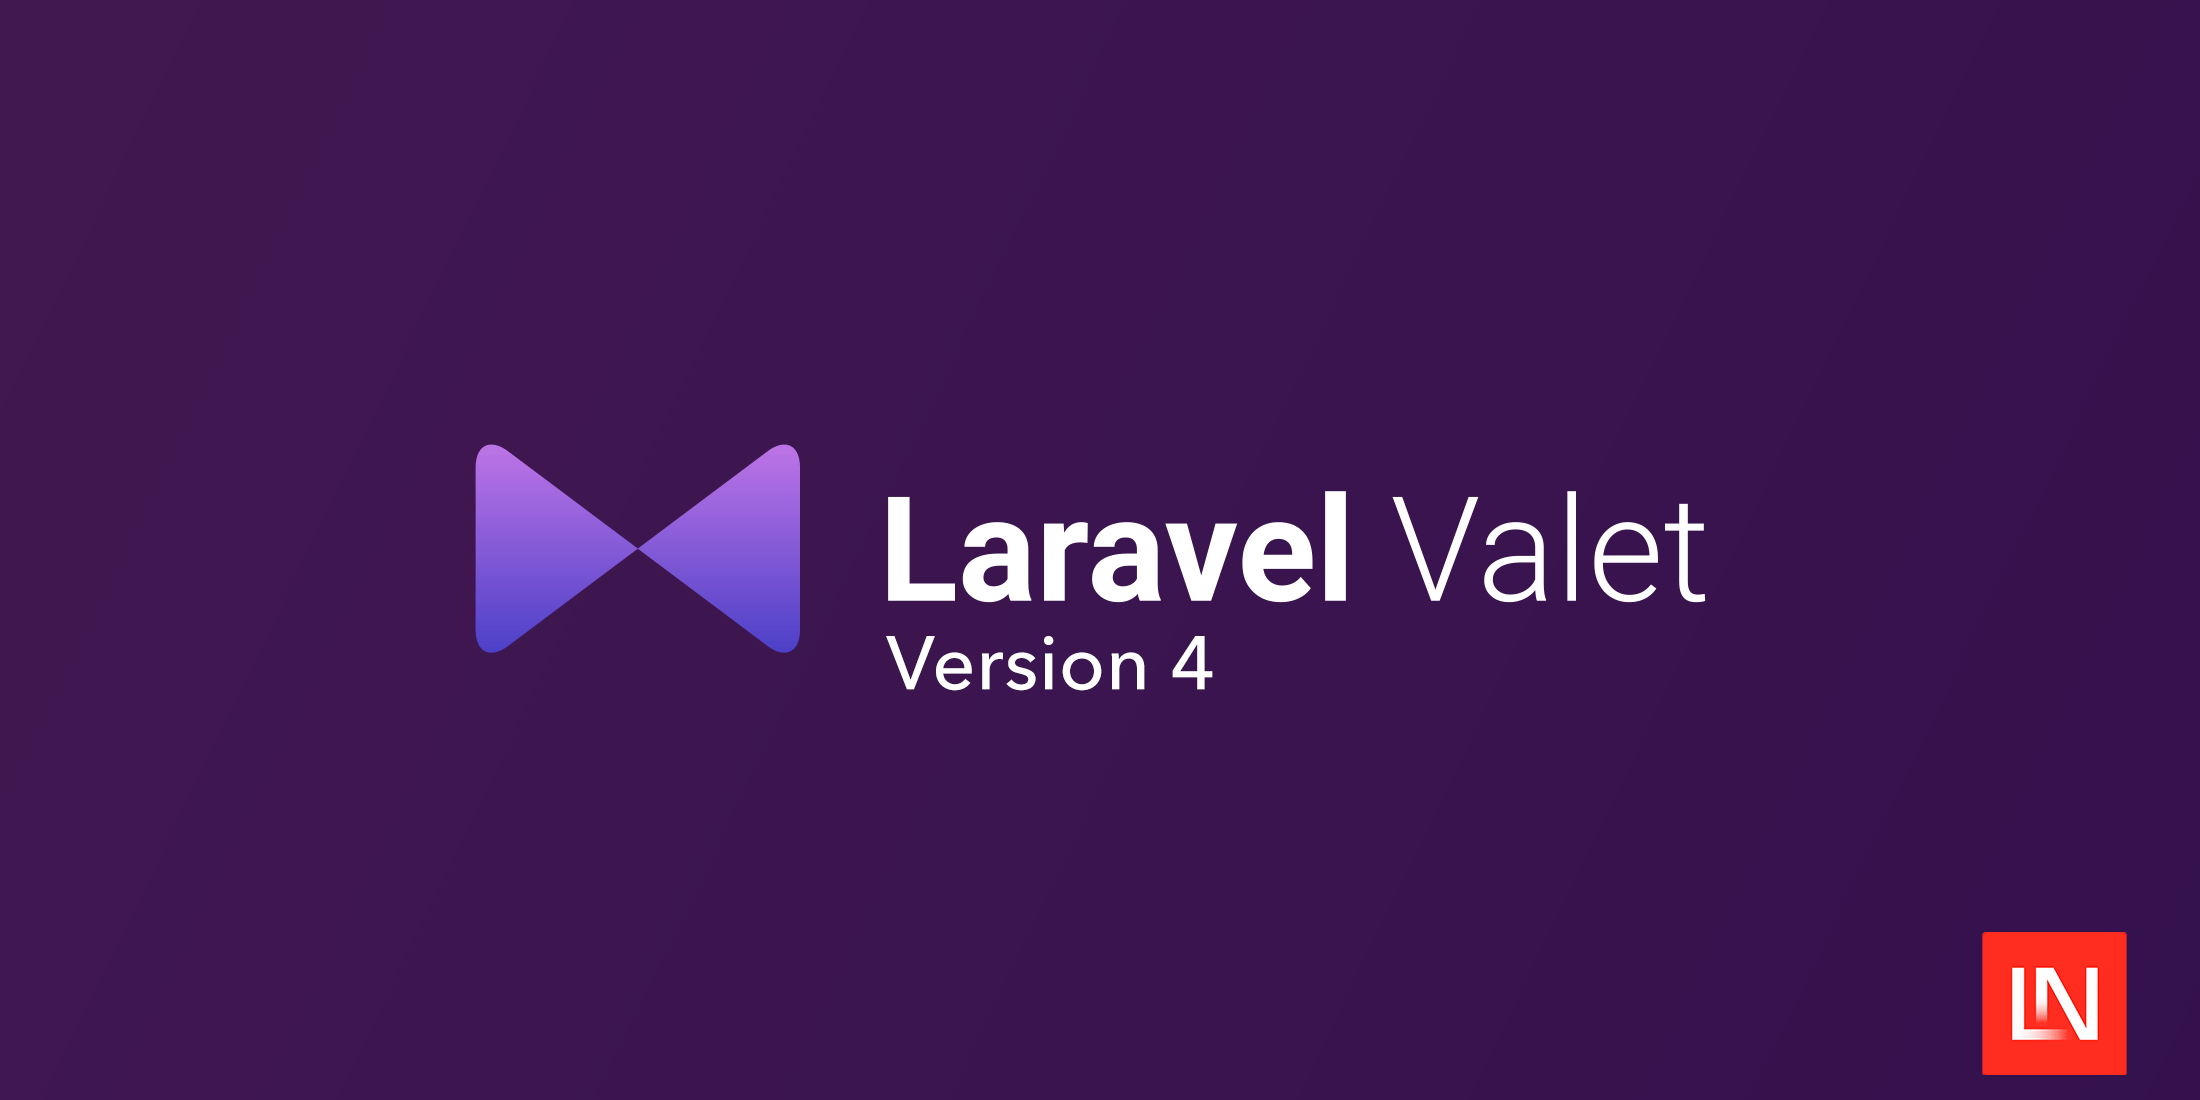 Wydawany jest Valet 4.0